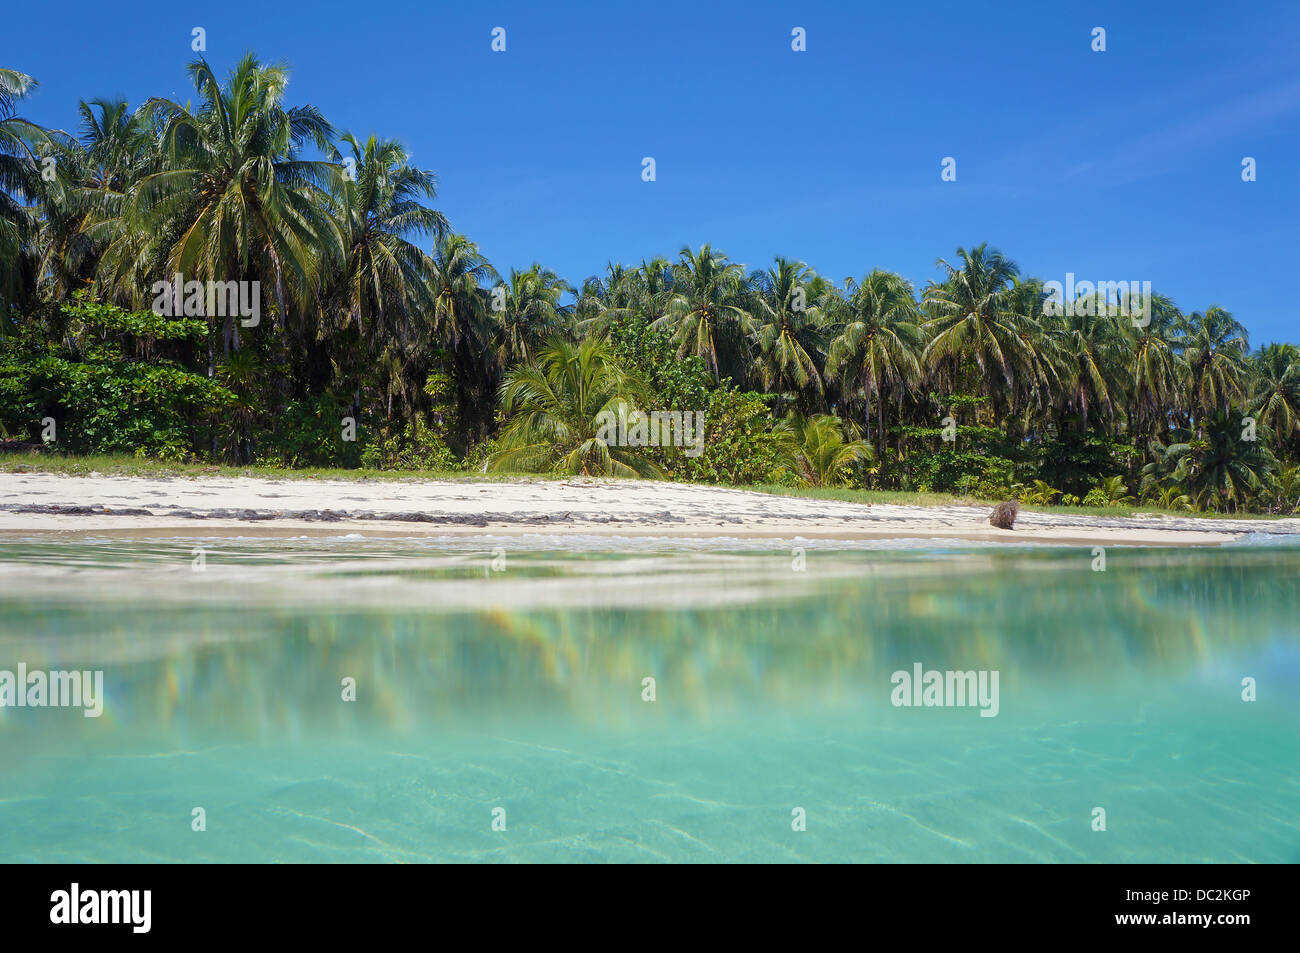 Spiaggia tropicale con vegetazione lussureggiante preso dalla superficie dell'acqua, il mare dei Caraibi, Zapatillas isole di Bocas del Toro, Panama Foto Stock